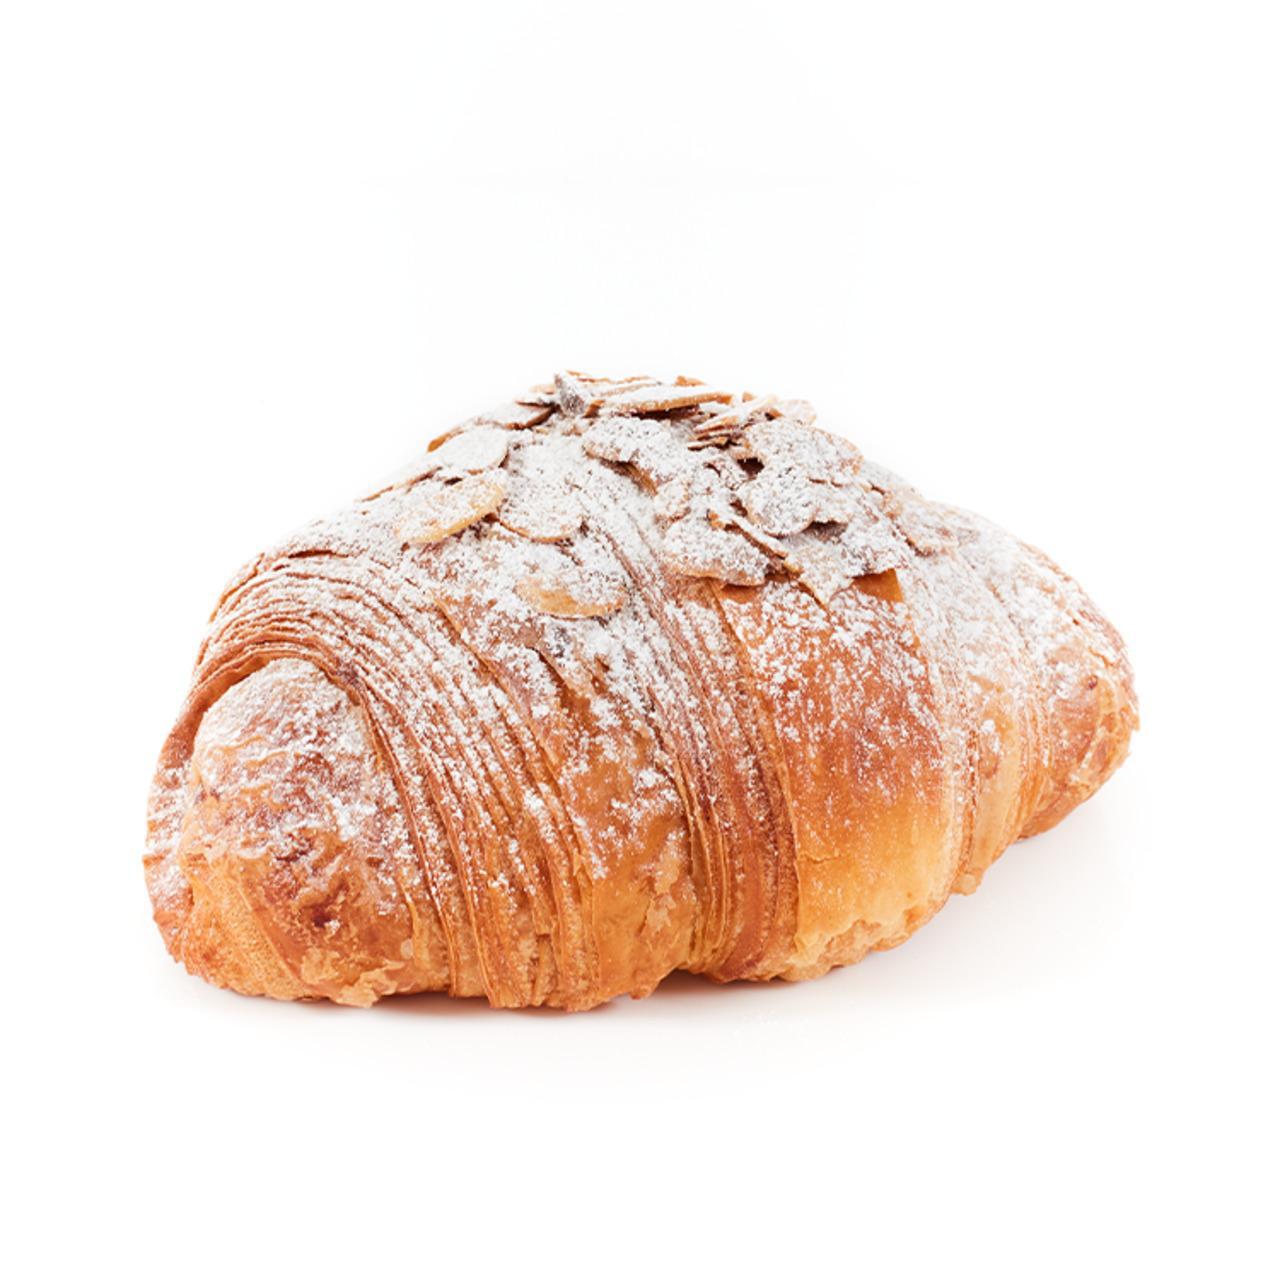 The Flour Station Almond Croissant